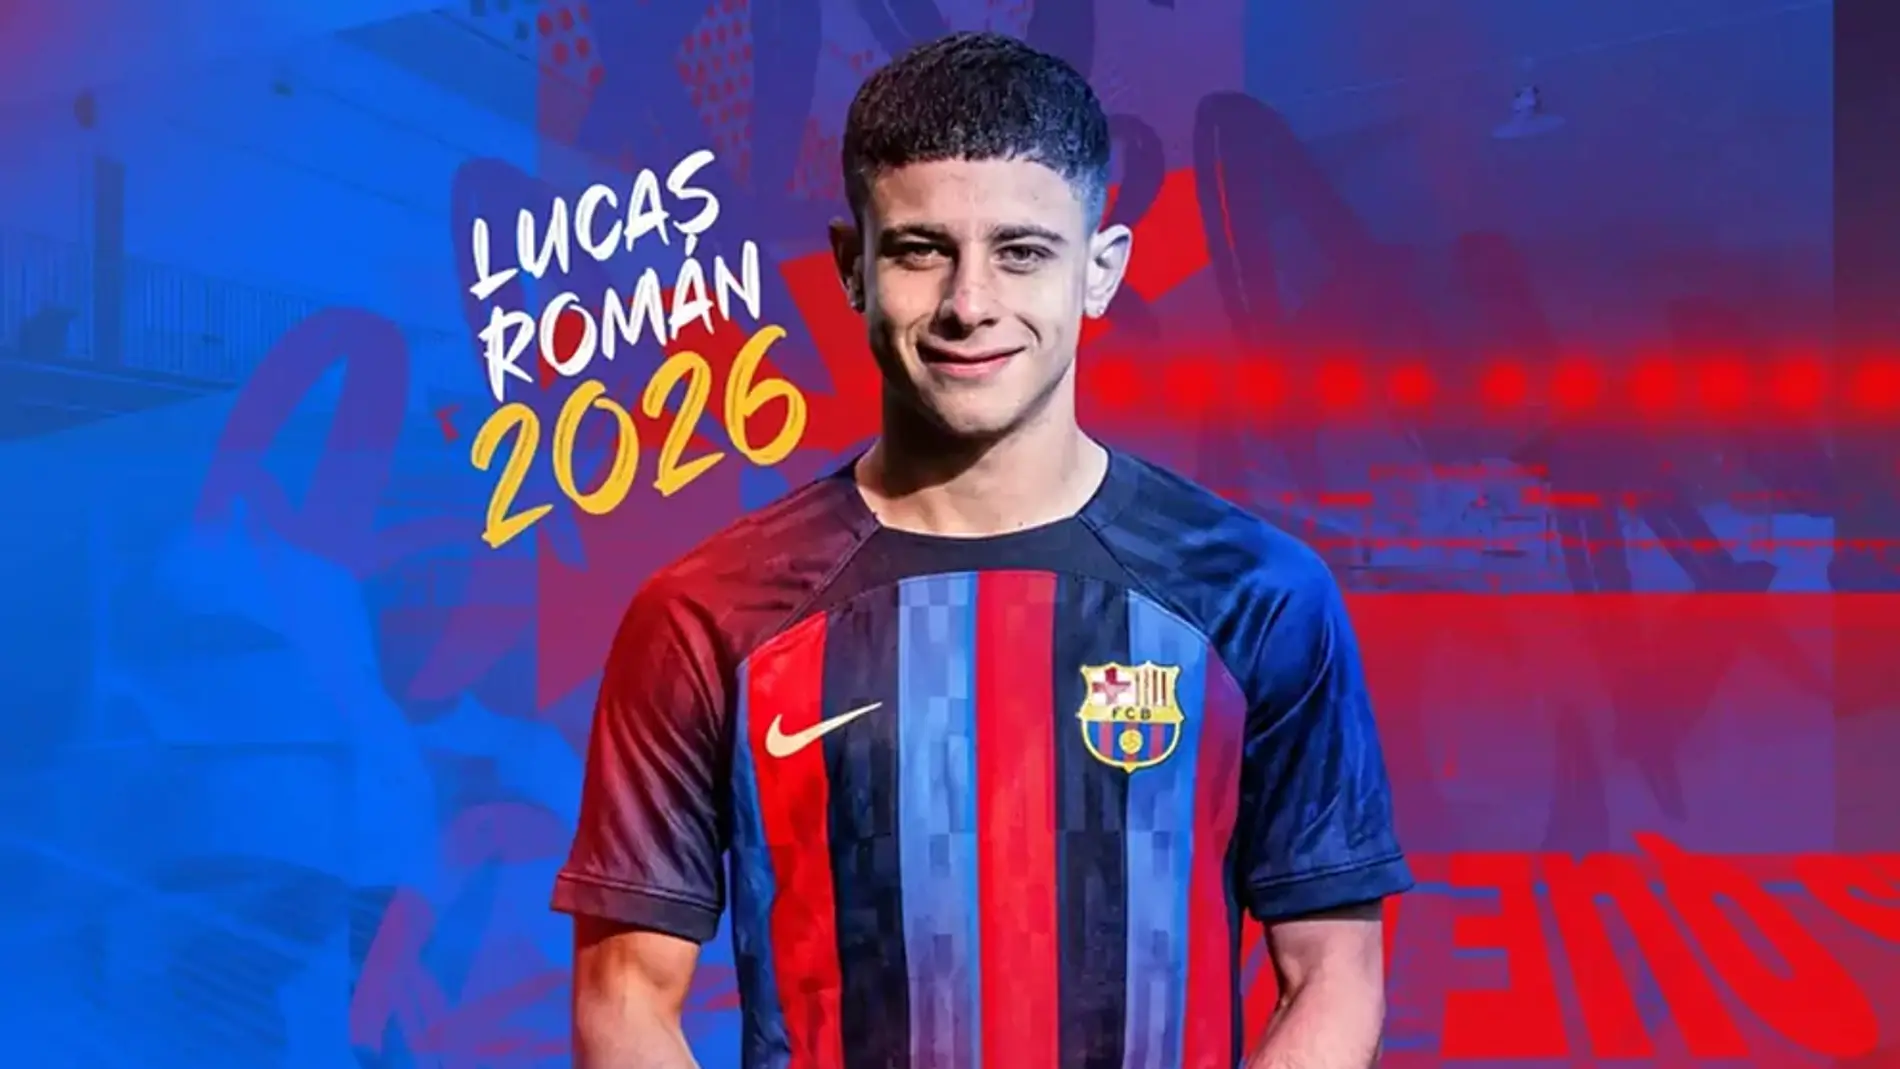 El anuncio de Lucas Román como nuevo jugador del FC Barcelona